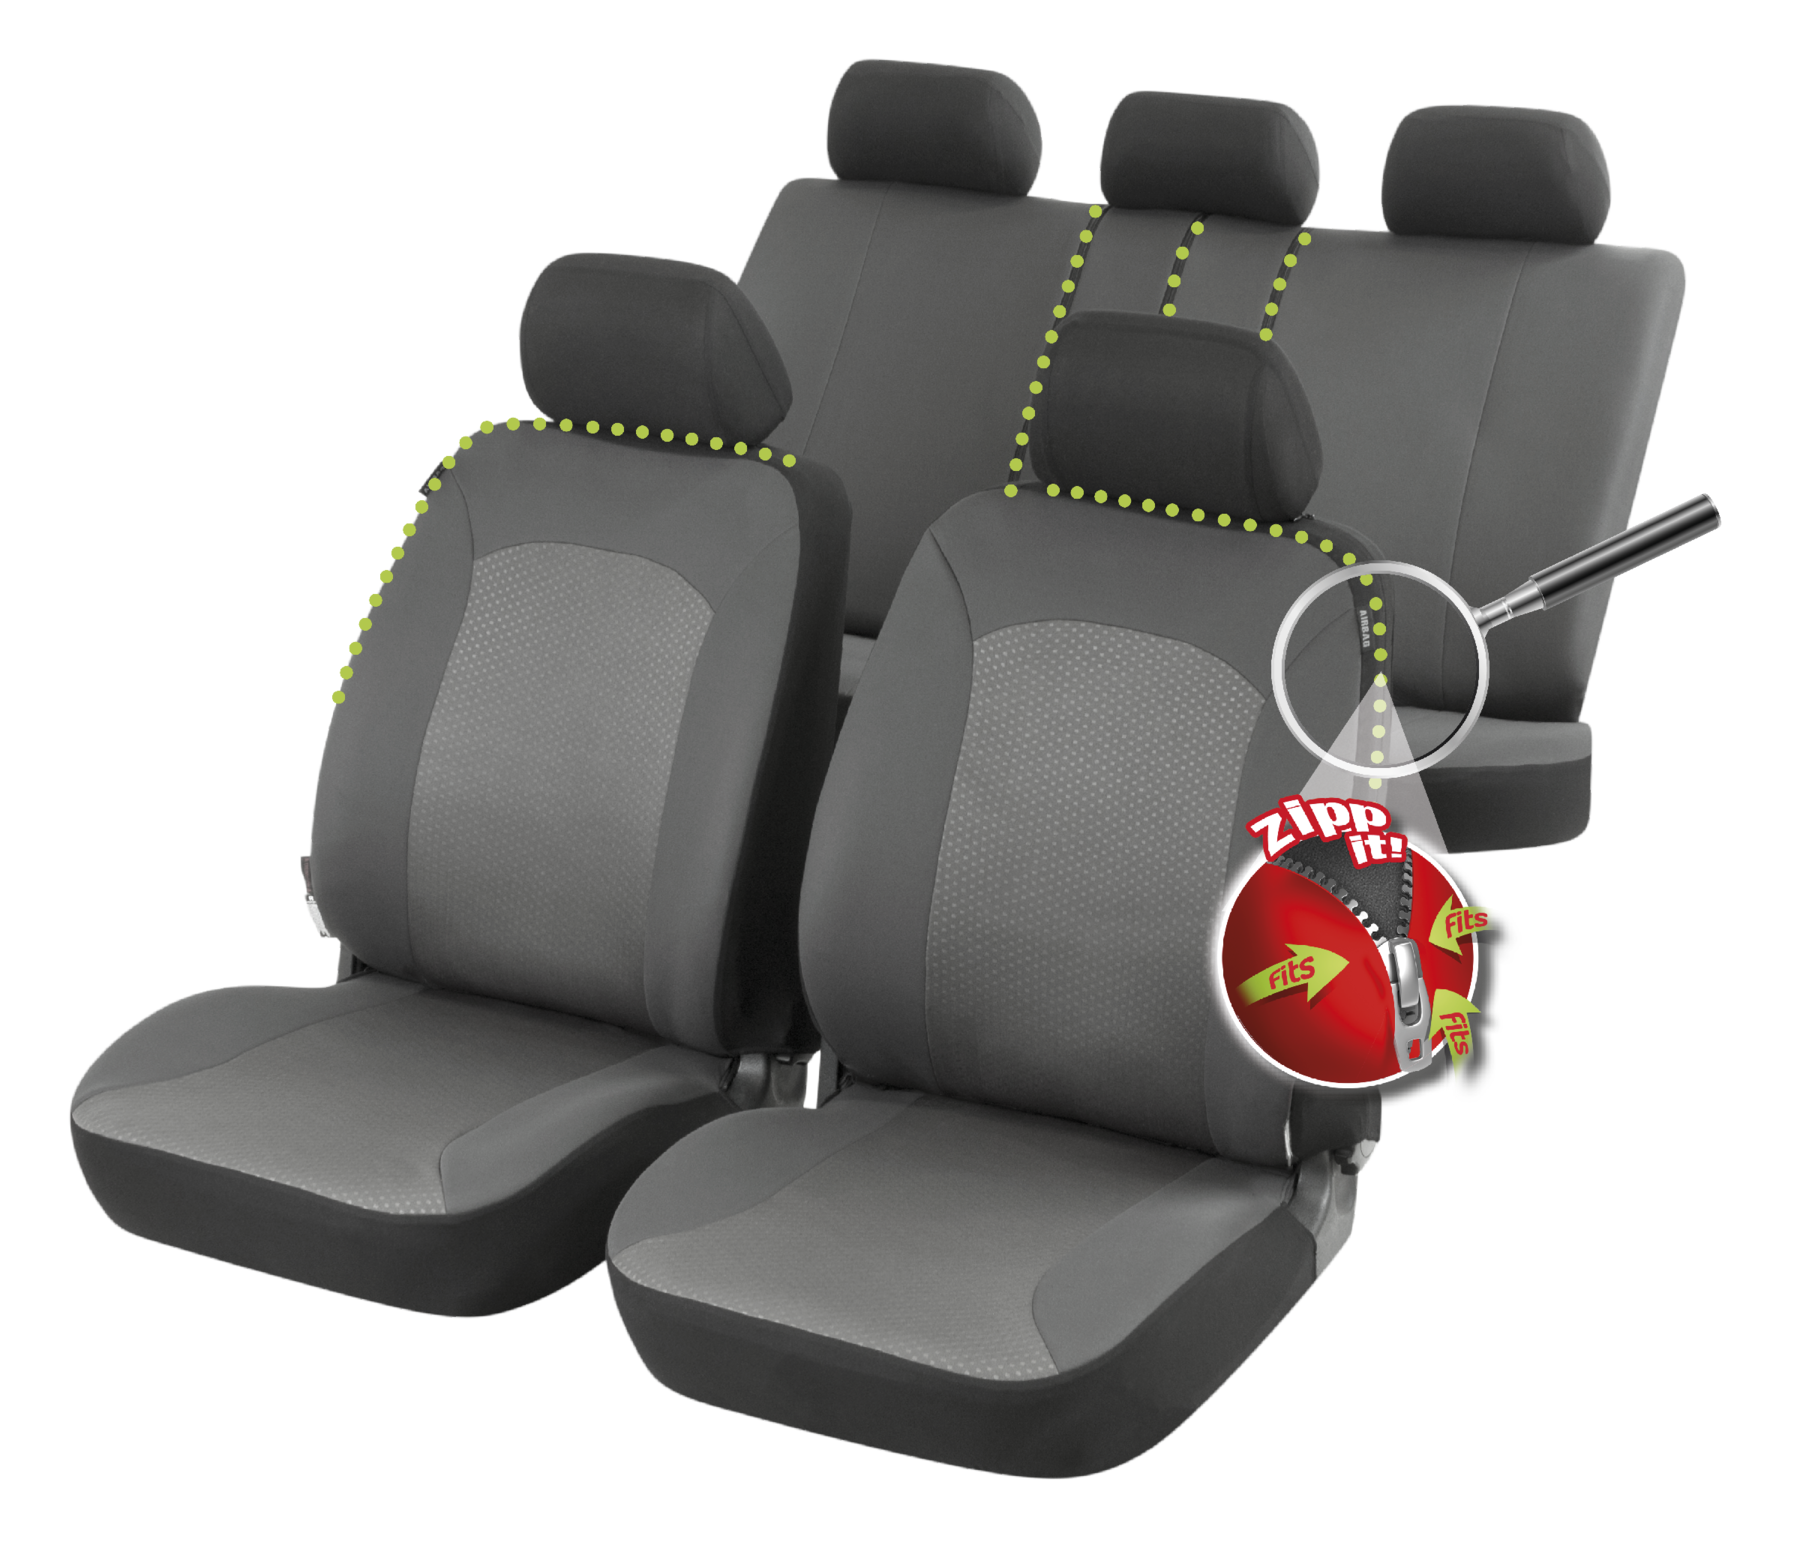 Auto stoelbeschermer Manhay met Zipper ZIPP-IT Autostoelhoes, set, 2 stoelbeschermer voor voorstoel, 1 stoelbeschermer voor achterbank grijs